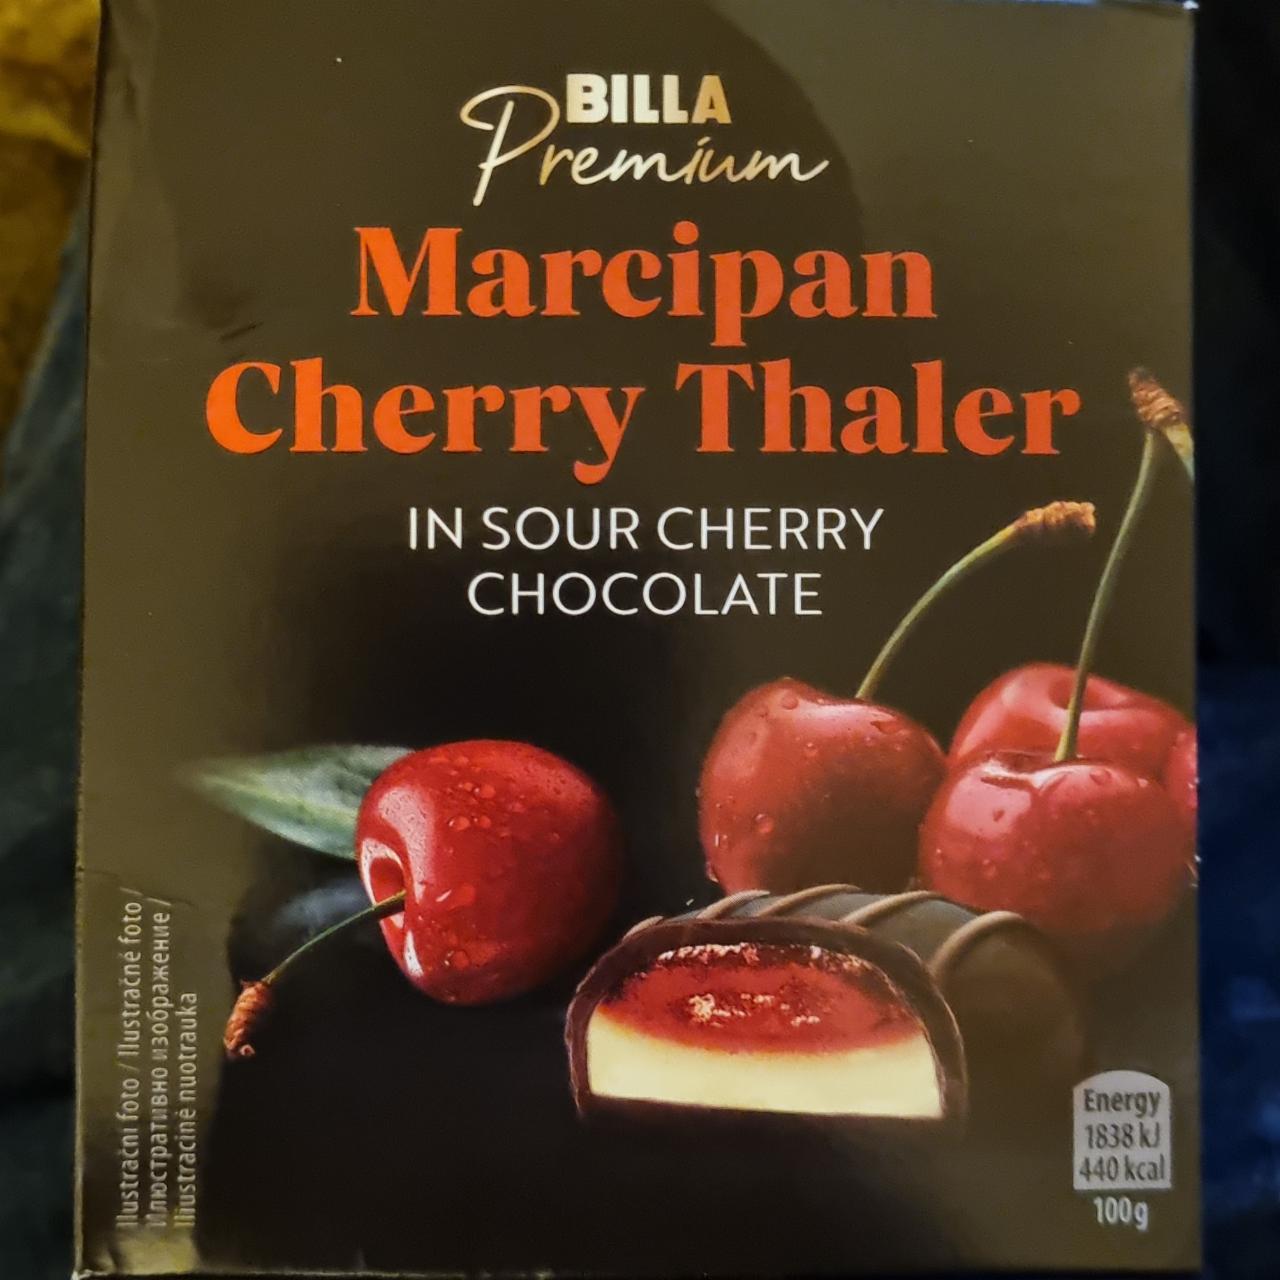 Fotografie - Marcipan Cherry Thaler in sour cherry chocolate Billa Premium